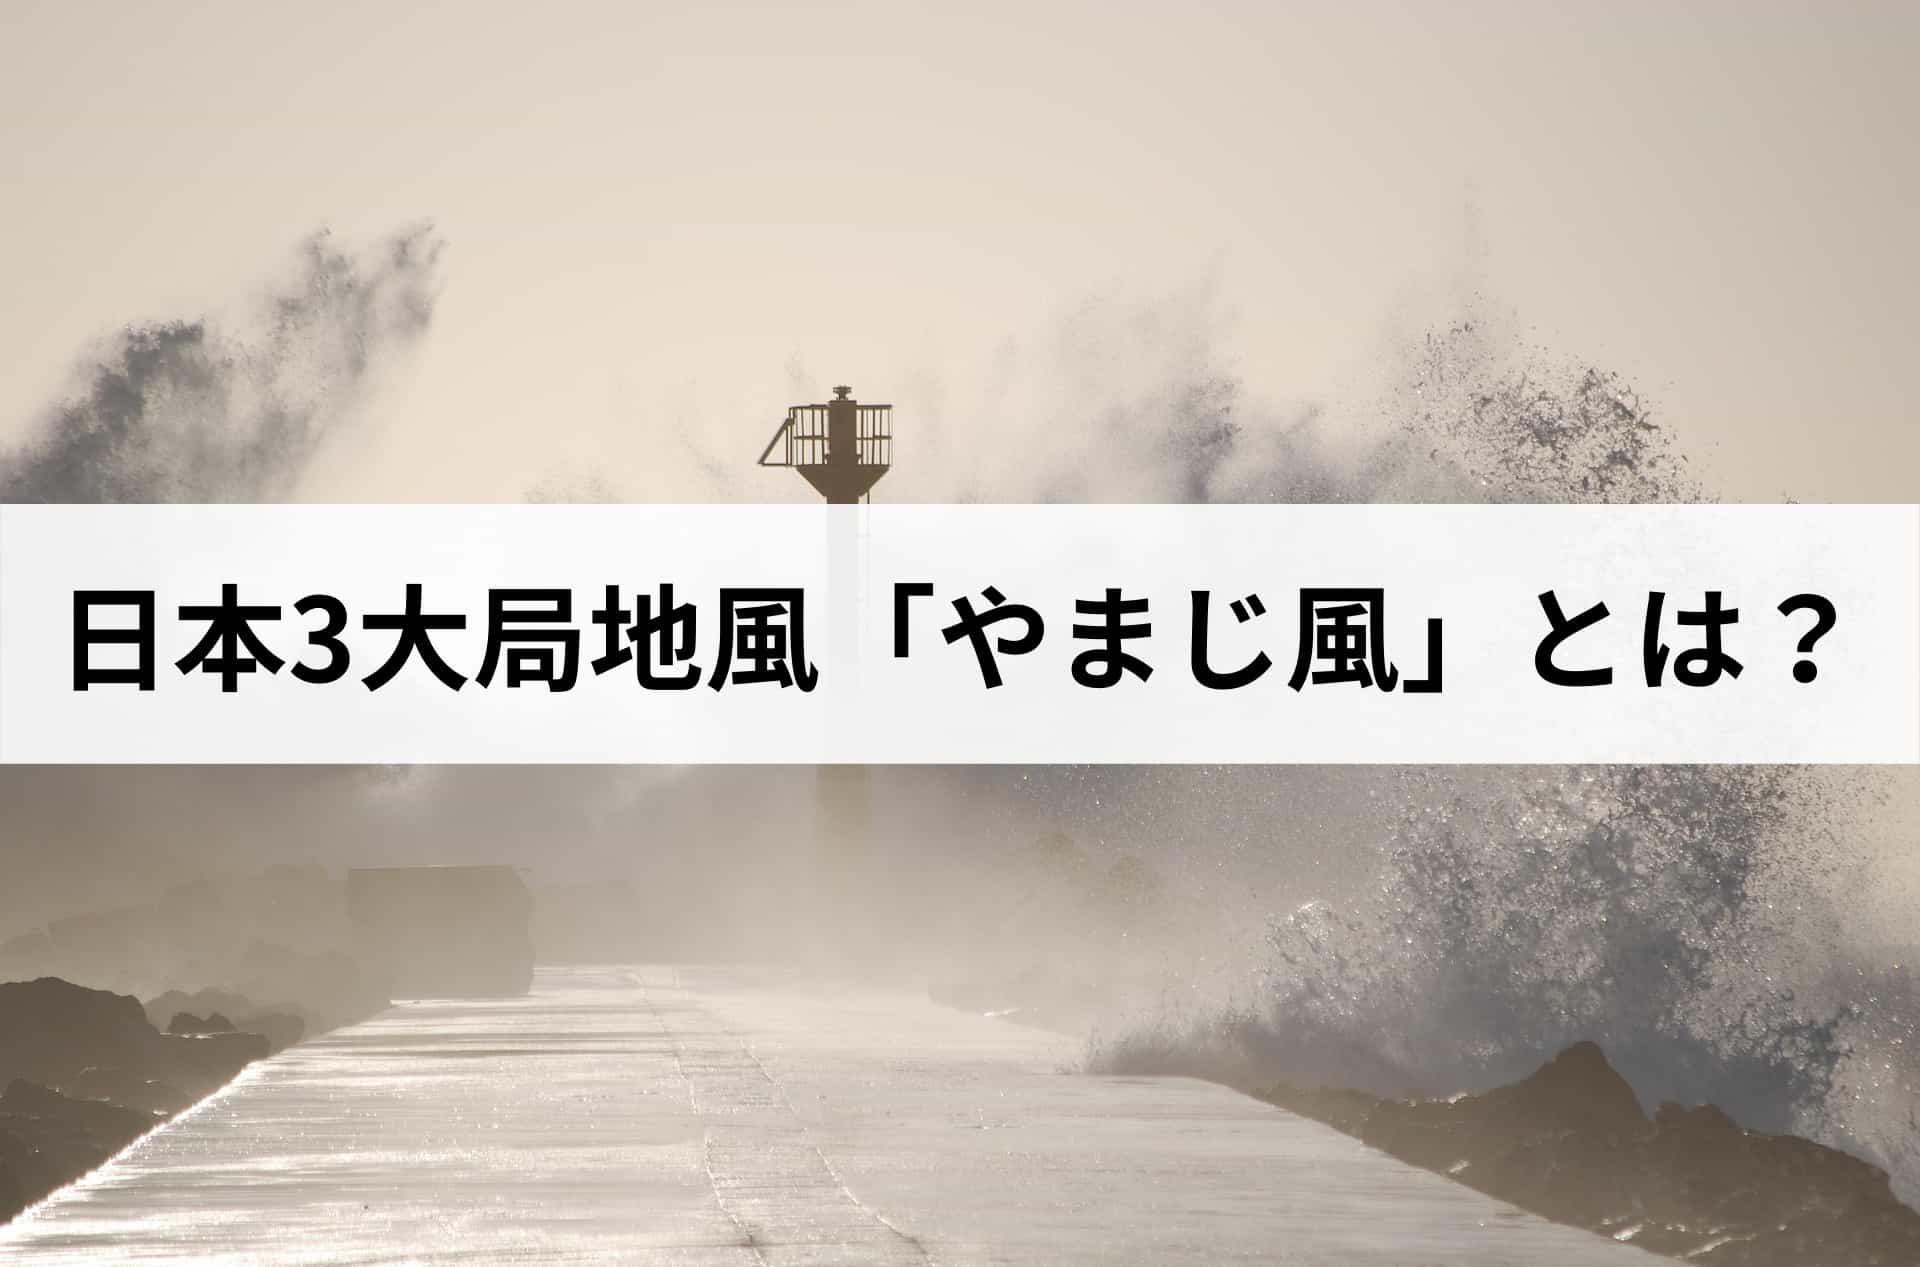 3大局地風の1つ「やまじ風」とは？愛媛県で発生した風災被害は火災保険で修繕できる。